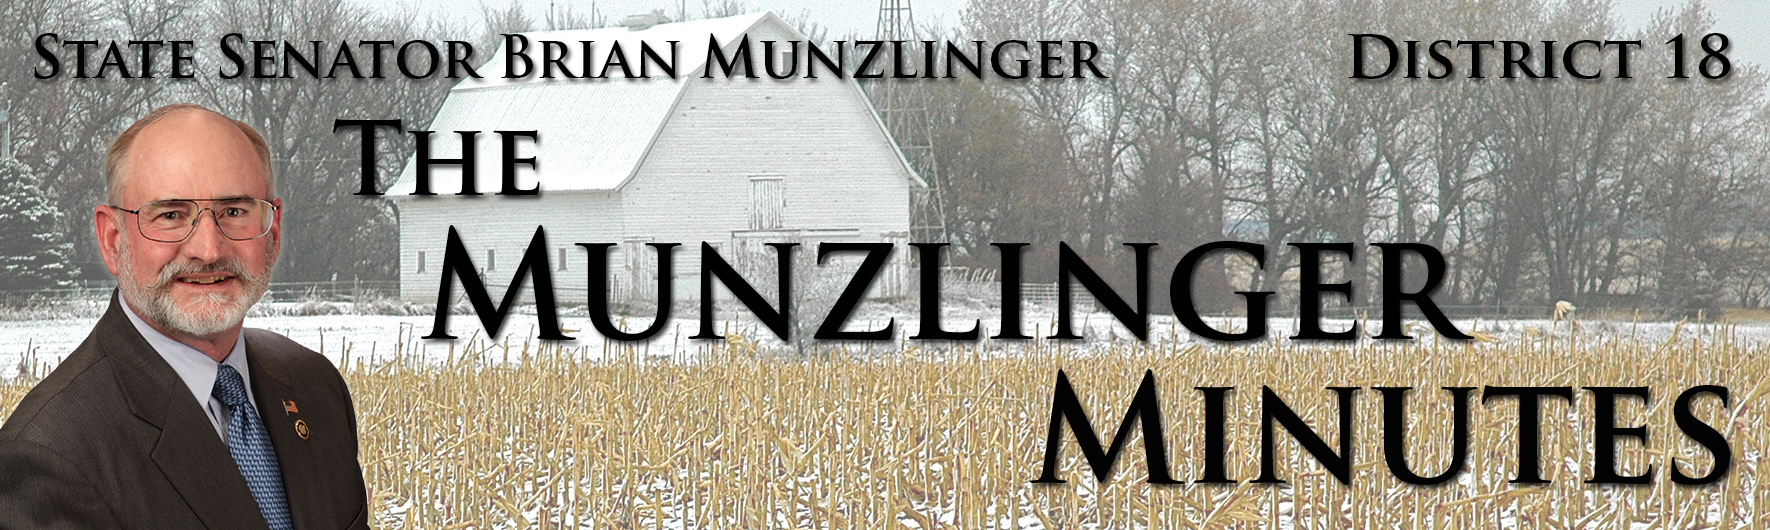 Munzlinger Banner Winter - 011217